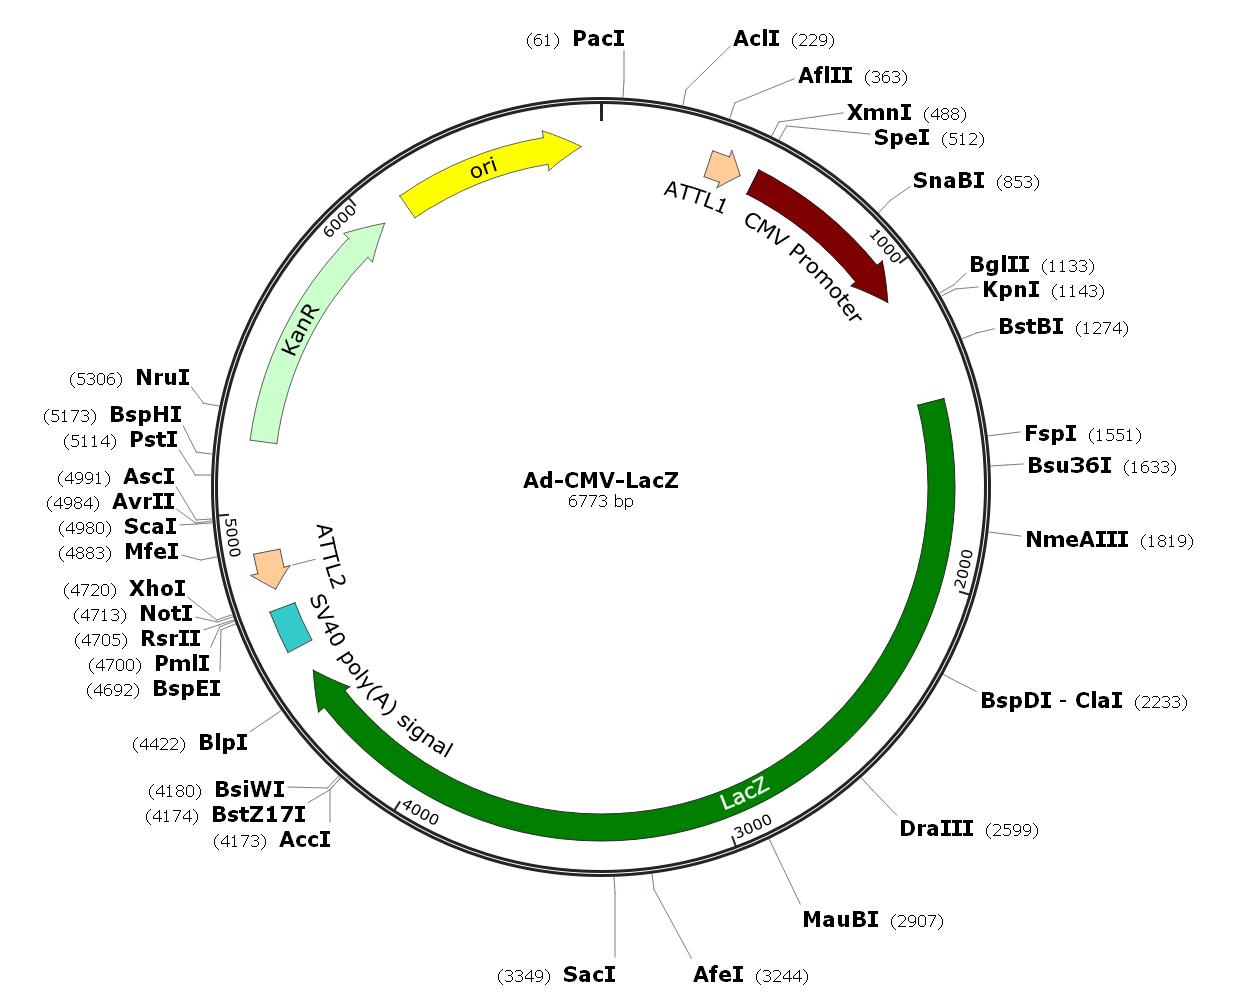 Ad-CMV-LacZ; Ad-LacZ; Pre-made Adenovirus 